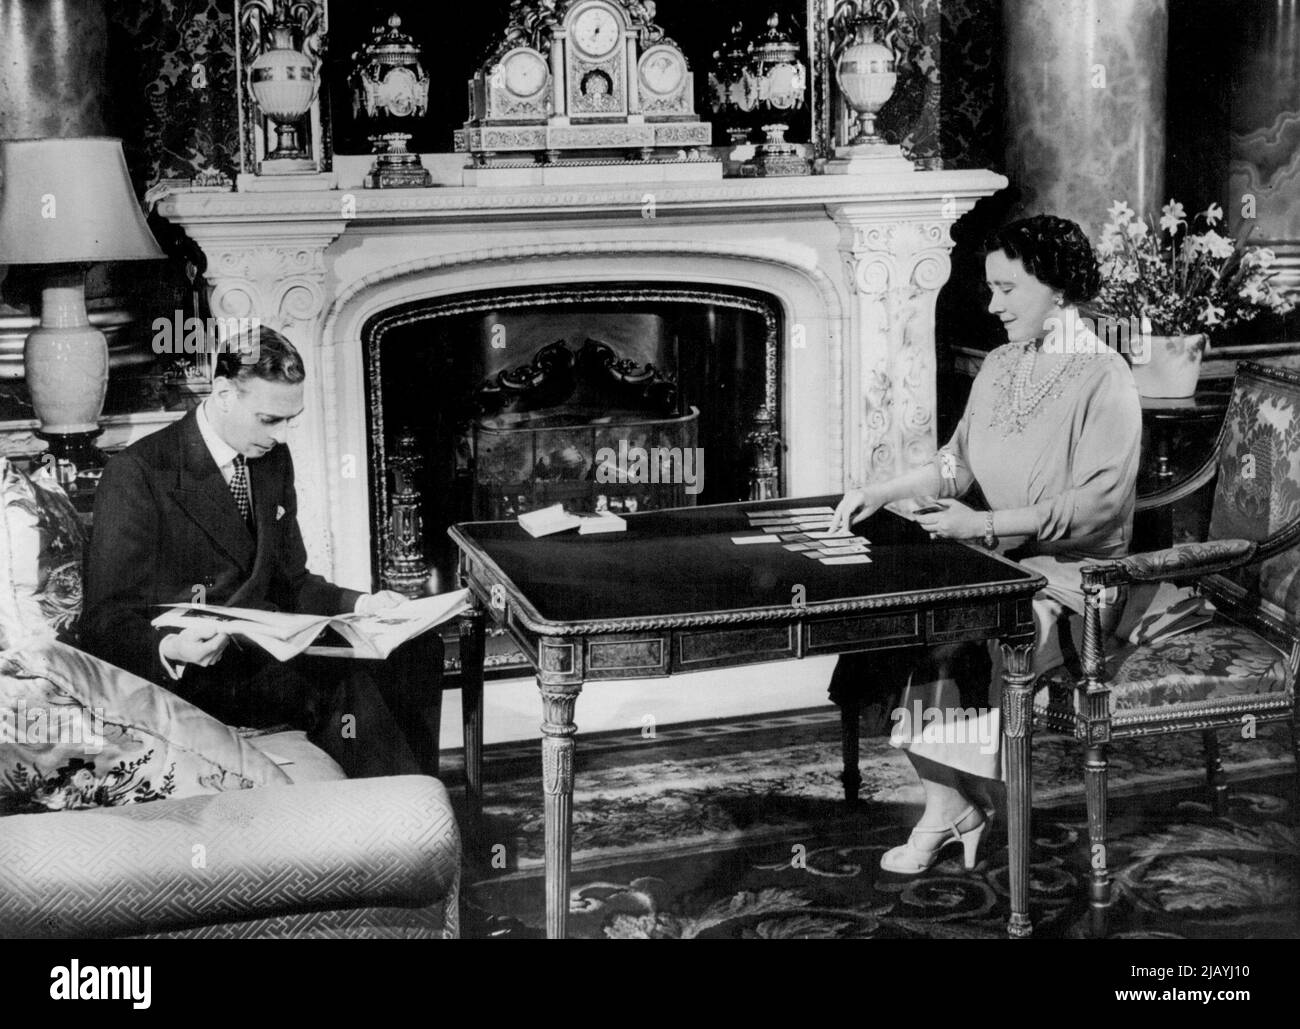 Il Royal Silver Wedding - H.M. la Regina gioca pazienza - un gioco di carte di cui è particolarmente affezionata - mentre il Re legge una rivista. Lunedì prossimo, 26th aprile, le loro maestà Re Giorgio VI e Regina Elisabetta celebrano il loro anniversario di matrimonio del 25th: Il loro matrimonio d'argento. Queste intime fotografie mostrano la coppia reale a casa nei loro appartamenti privati a Buckingham Palace, Londra, e sono state scattate appositamente per l'occasione. Aprile 20, 1948. (Foto di Fox Photos). Foto Stock